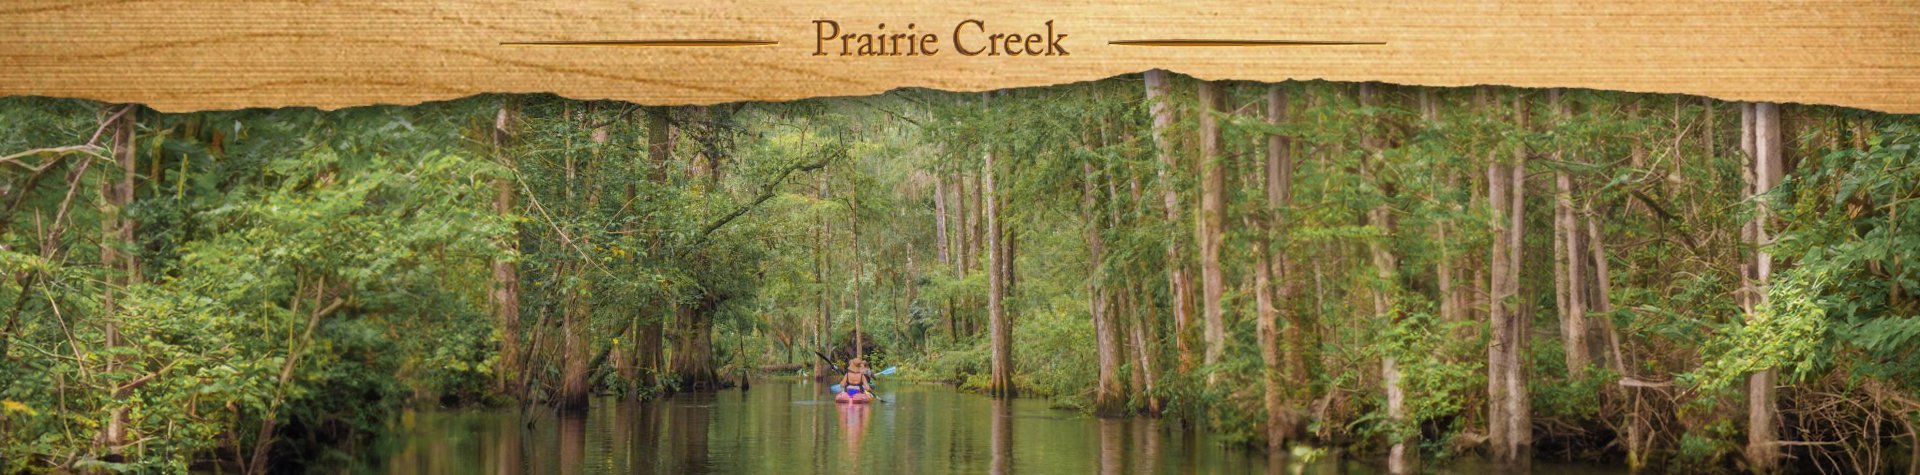 Prairie Creek – Sept 2018